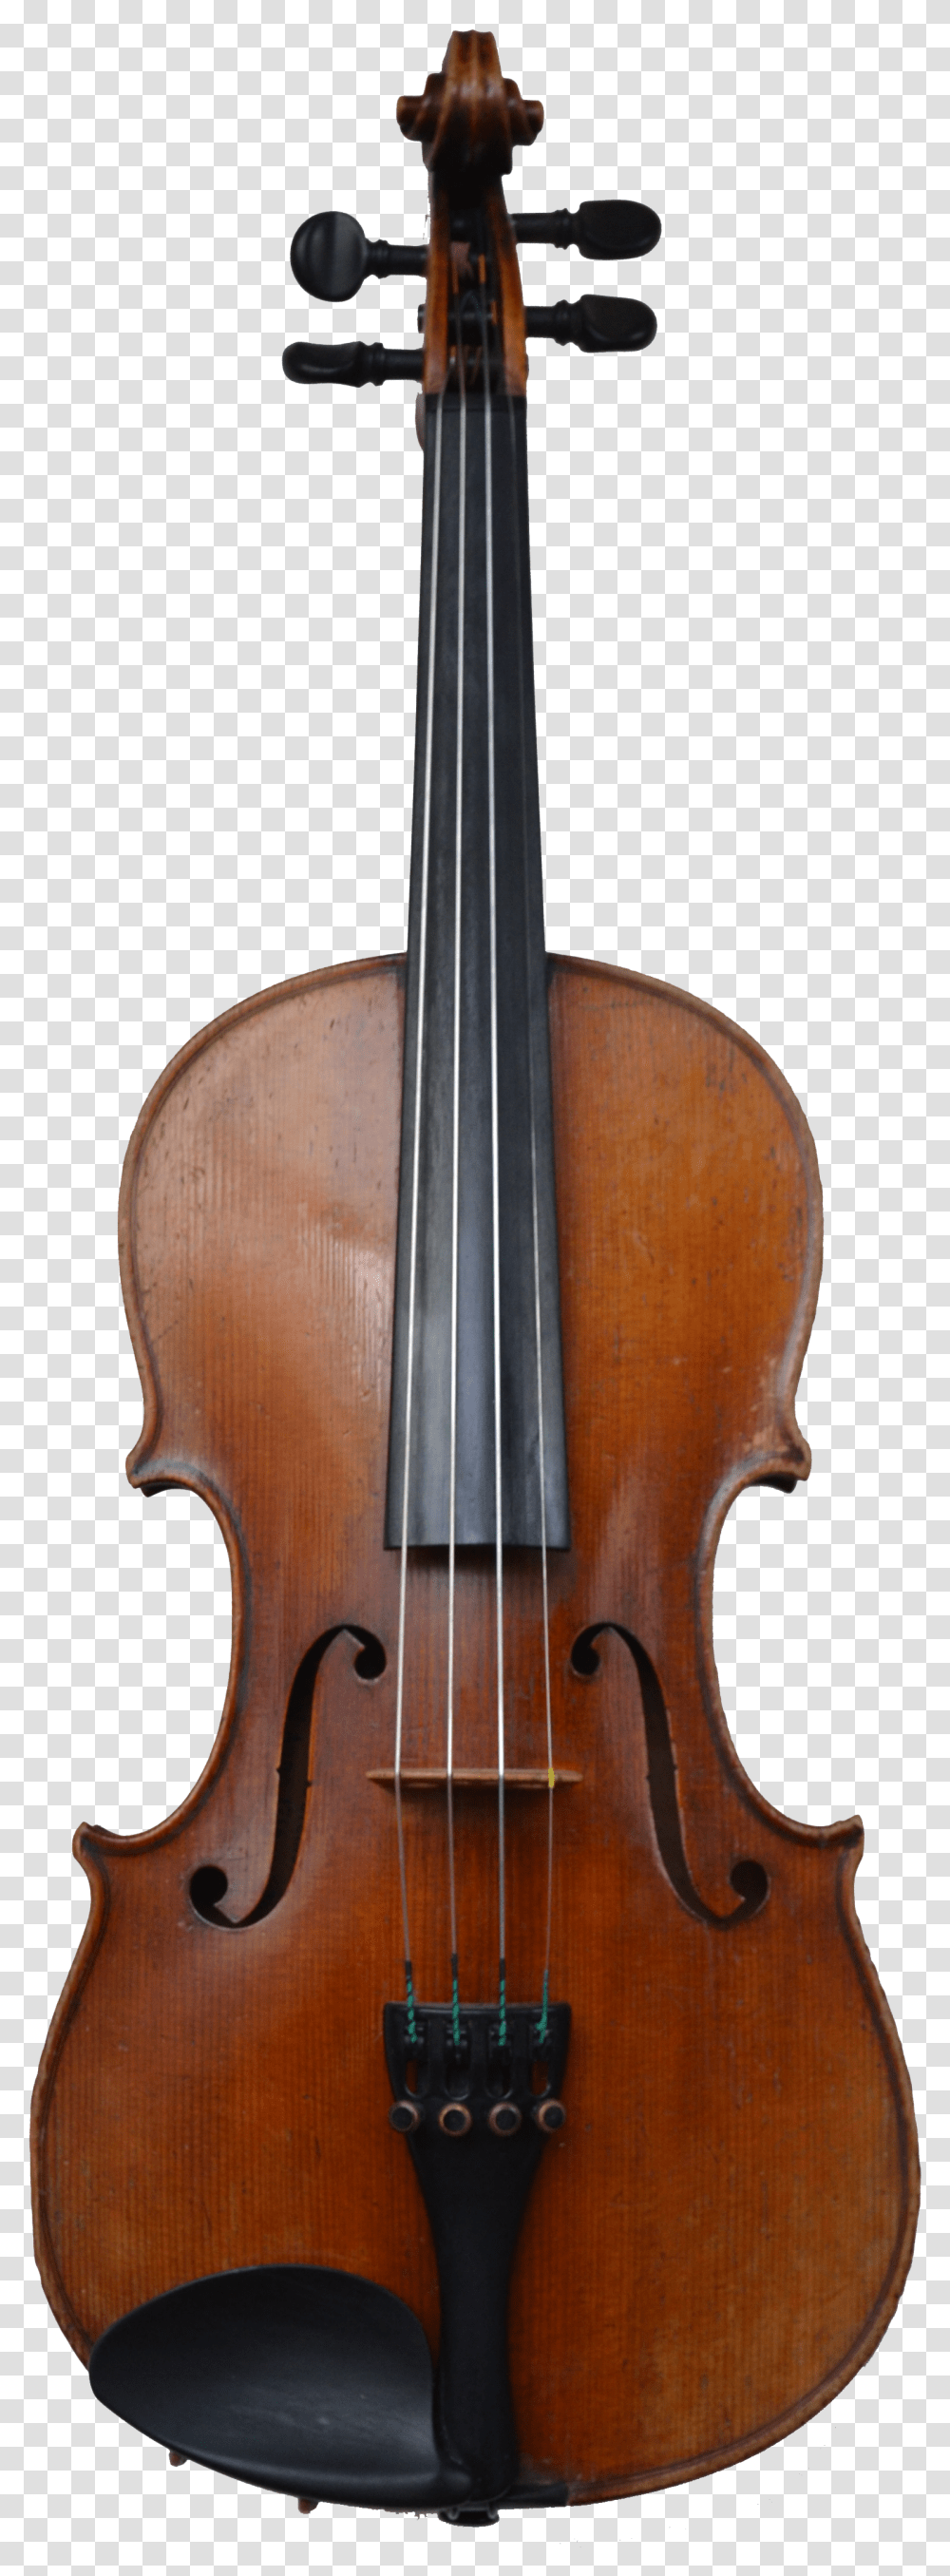 Violin Hellier Violin Transparent Png